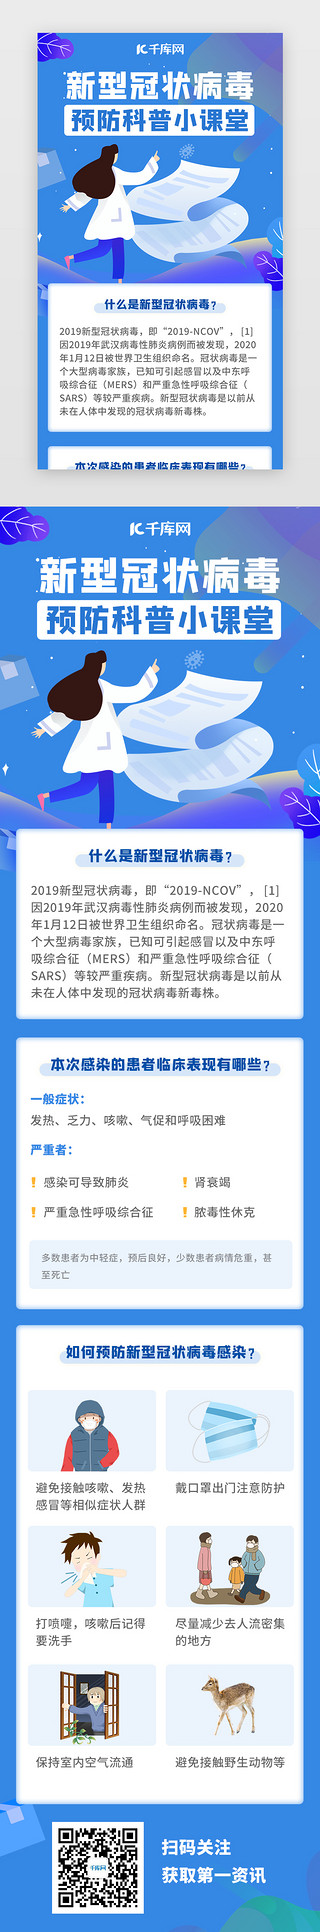 中国医疗保UI设计素材_蓝色新型流感肺炎预防知识H5医疗